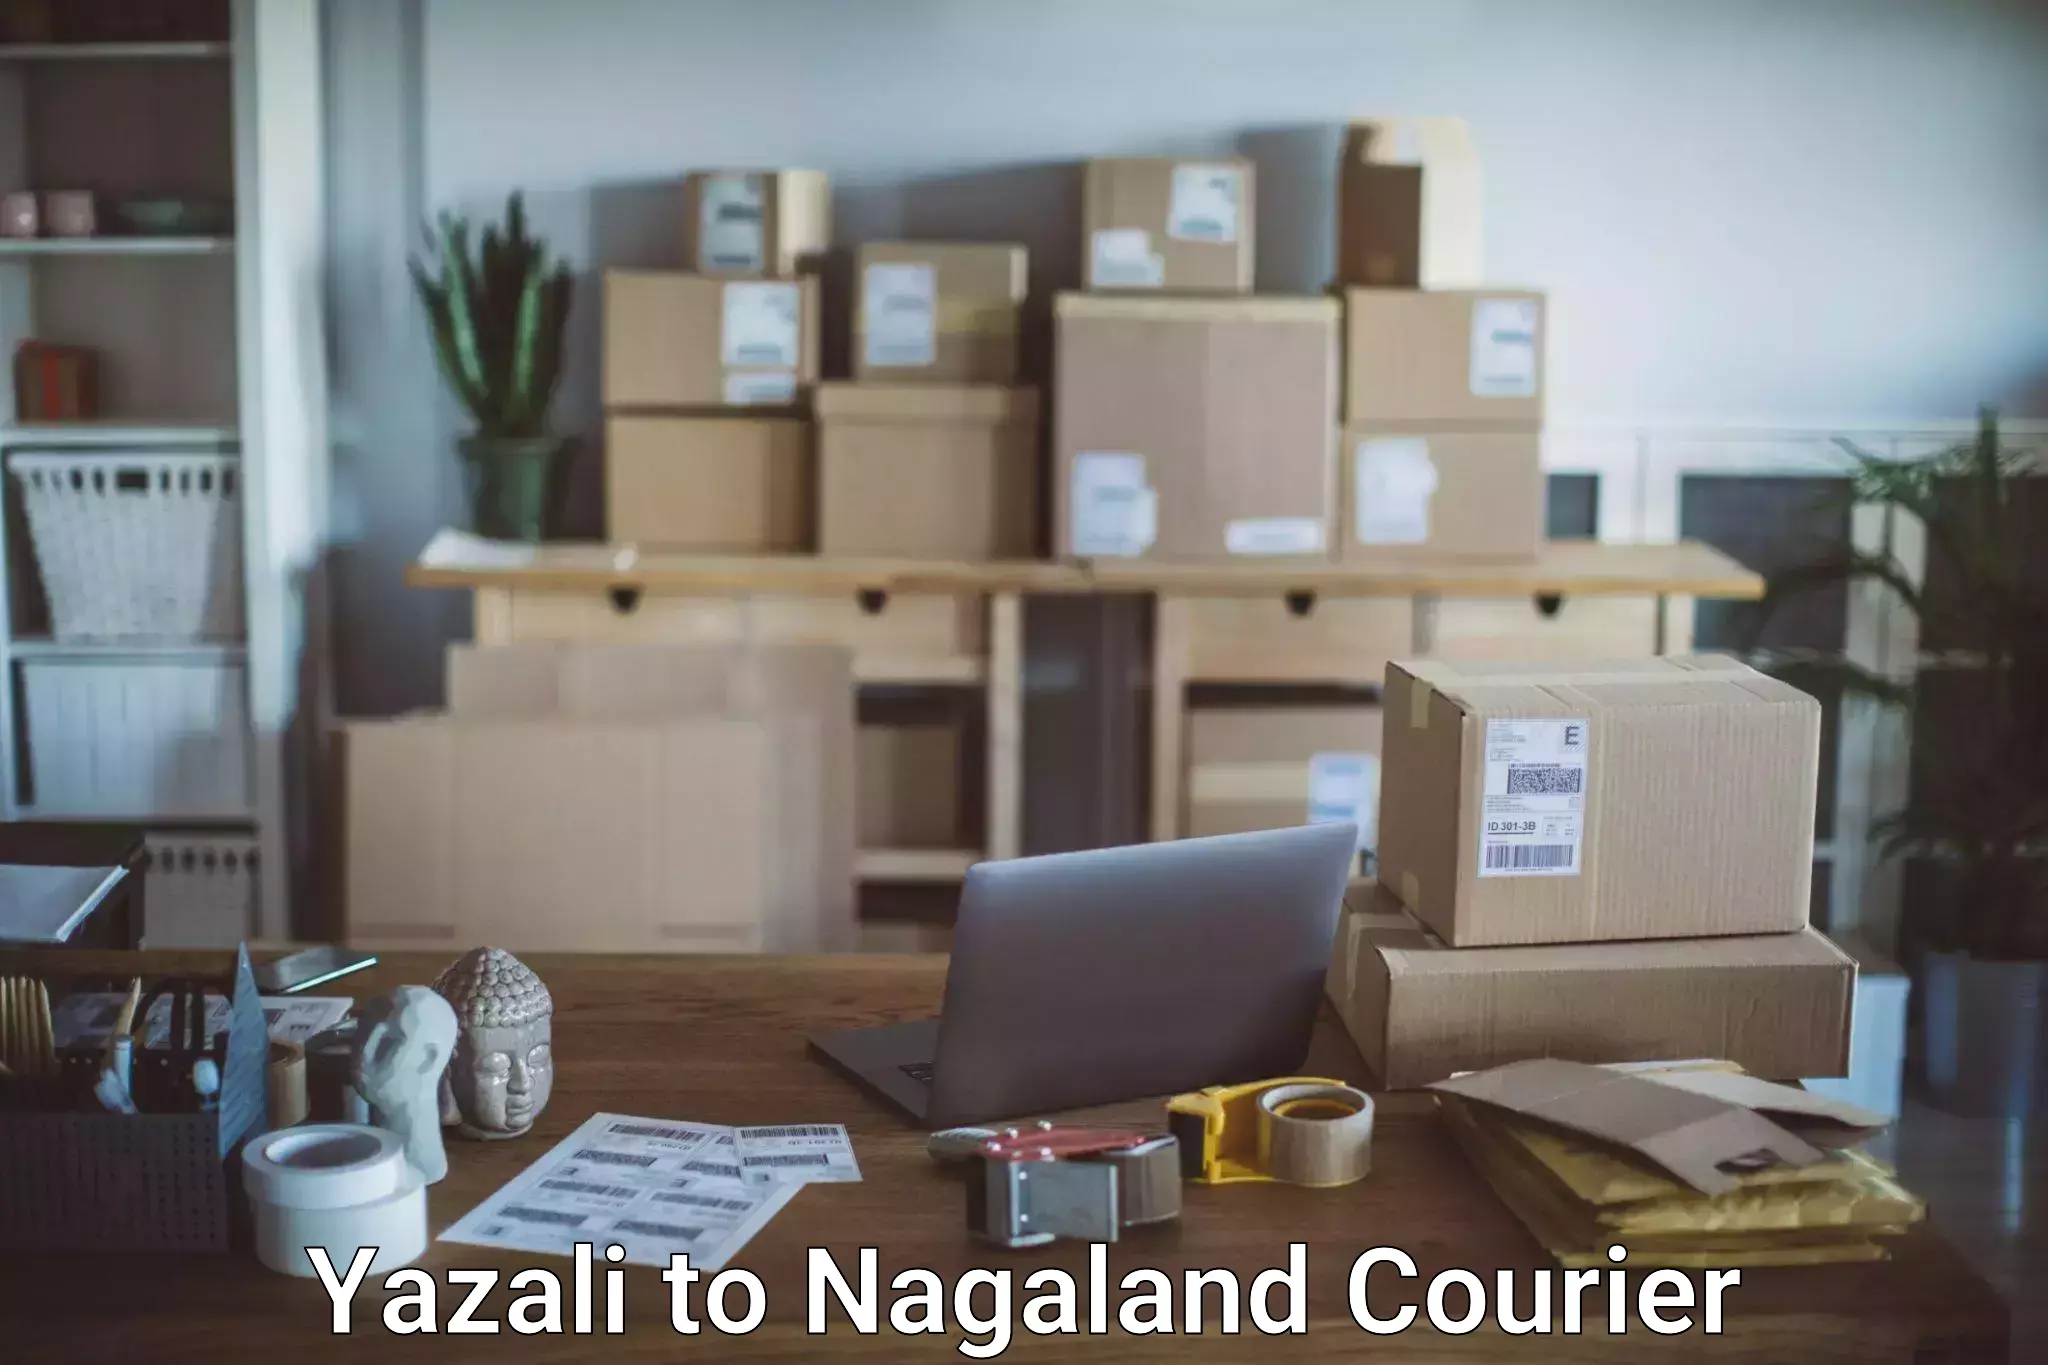 Luggage delivery system Yazali to NIT Nagaland